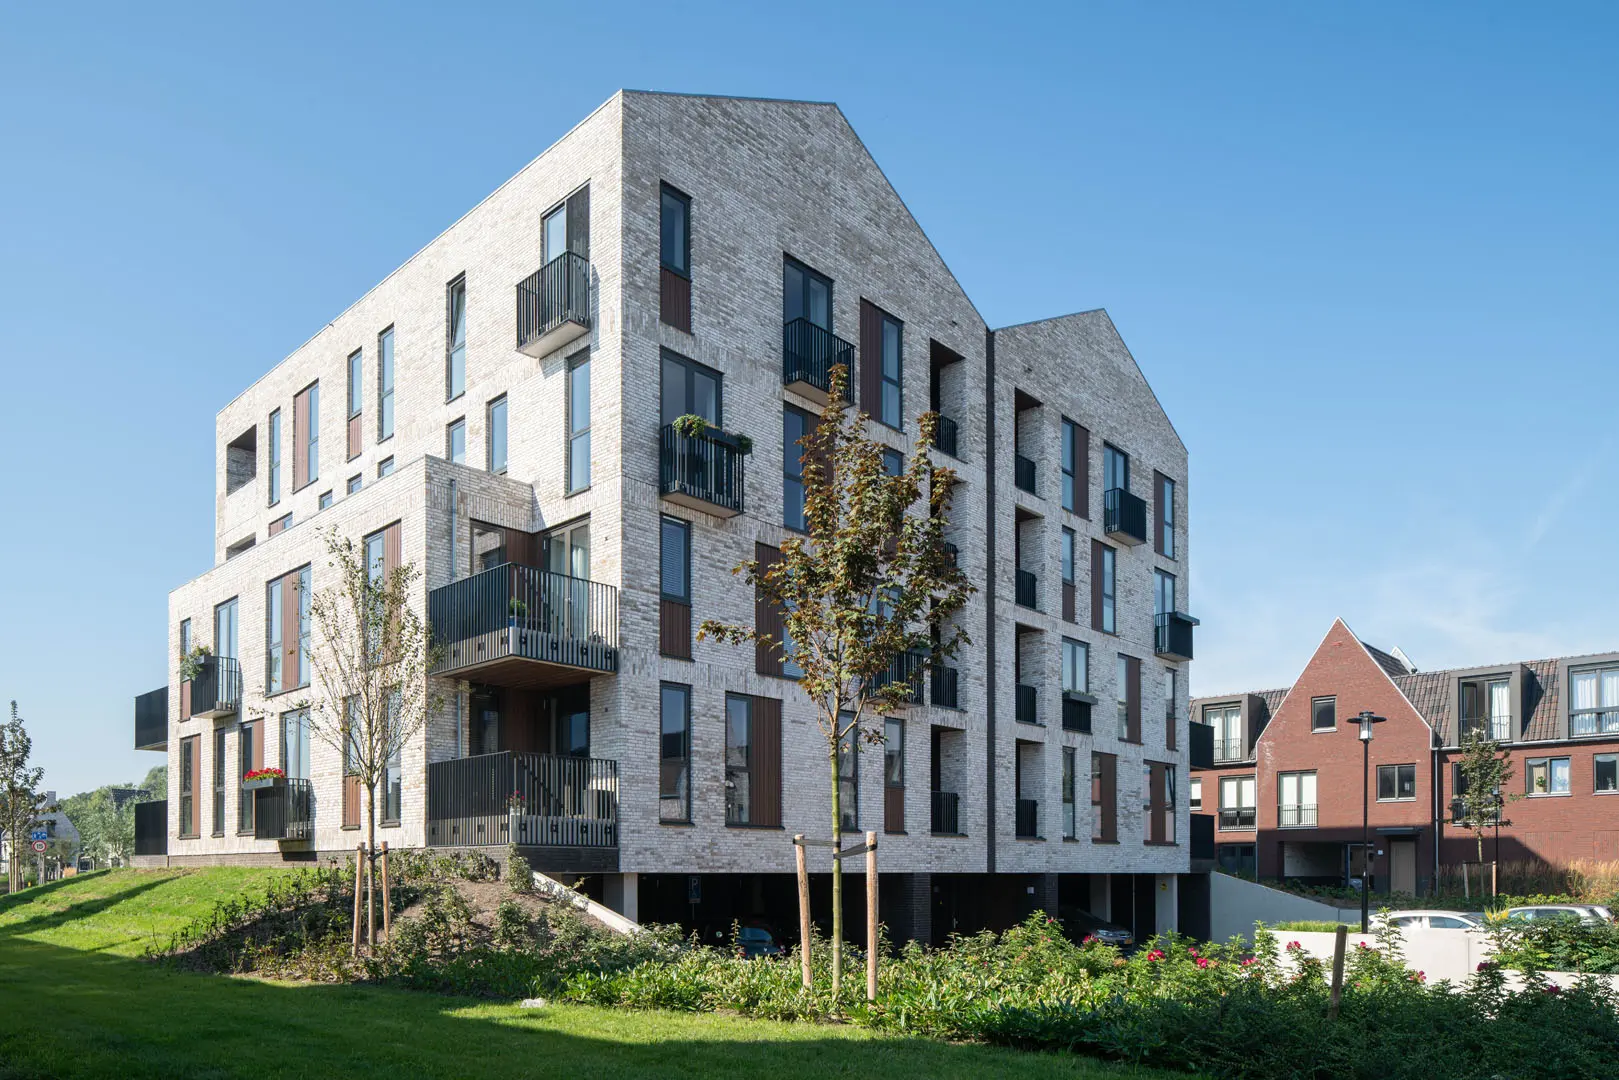 ENZO architectuur N interieur - Ringoevers - Egbert de Boer - exterieur - woonwijk - Hillegom - haven - appartementencomplex - havenzicht